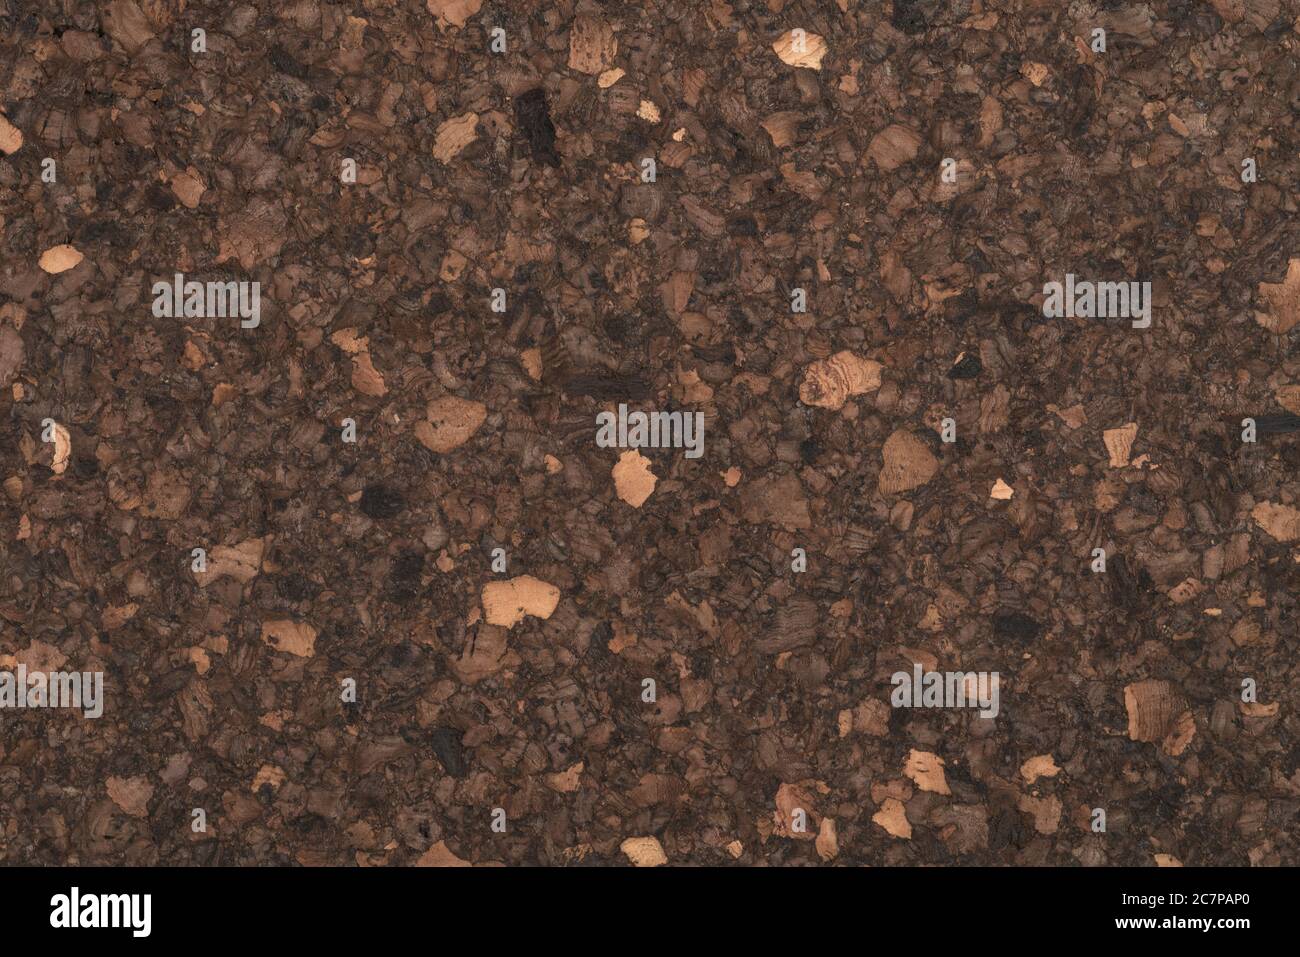 Texture of dark cork surface Stock Photo